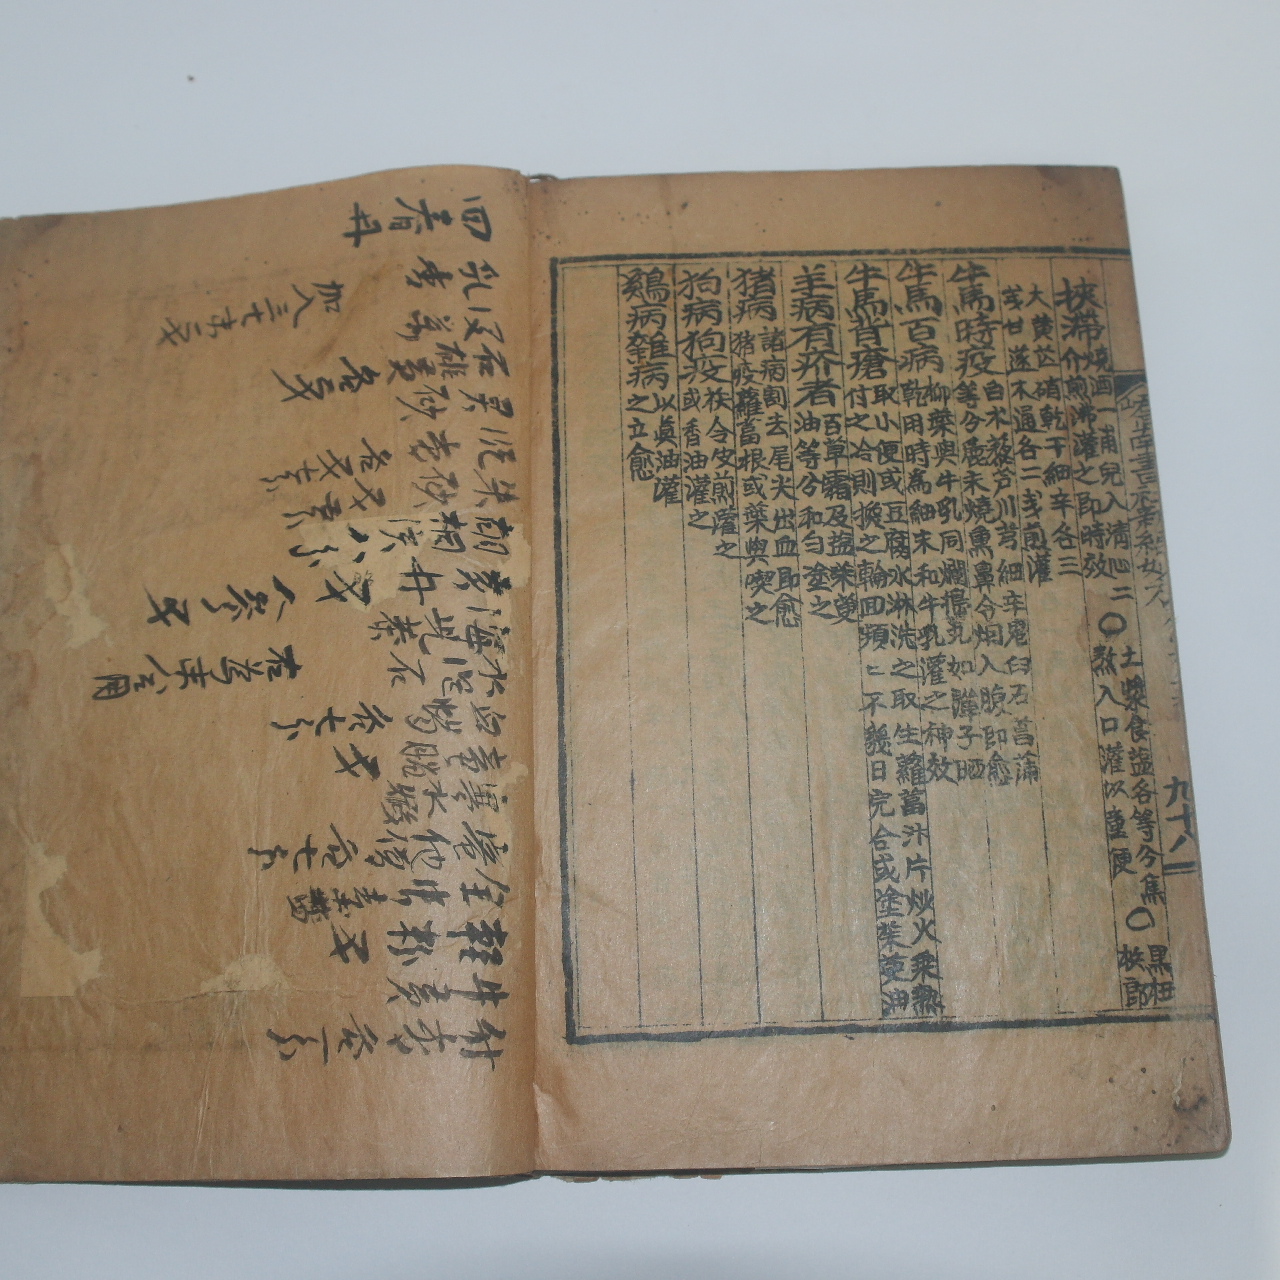 1938년 정약용(丁若鏞) 의서 교남서사신편묘방(嶠南書社新編妙方) 1책완질